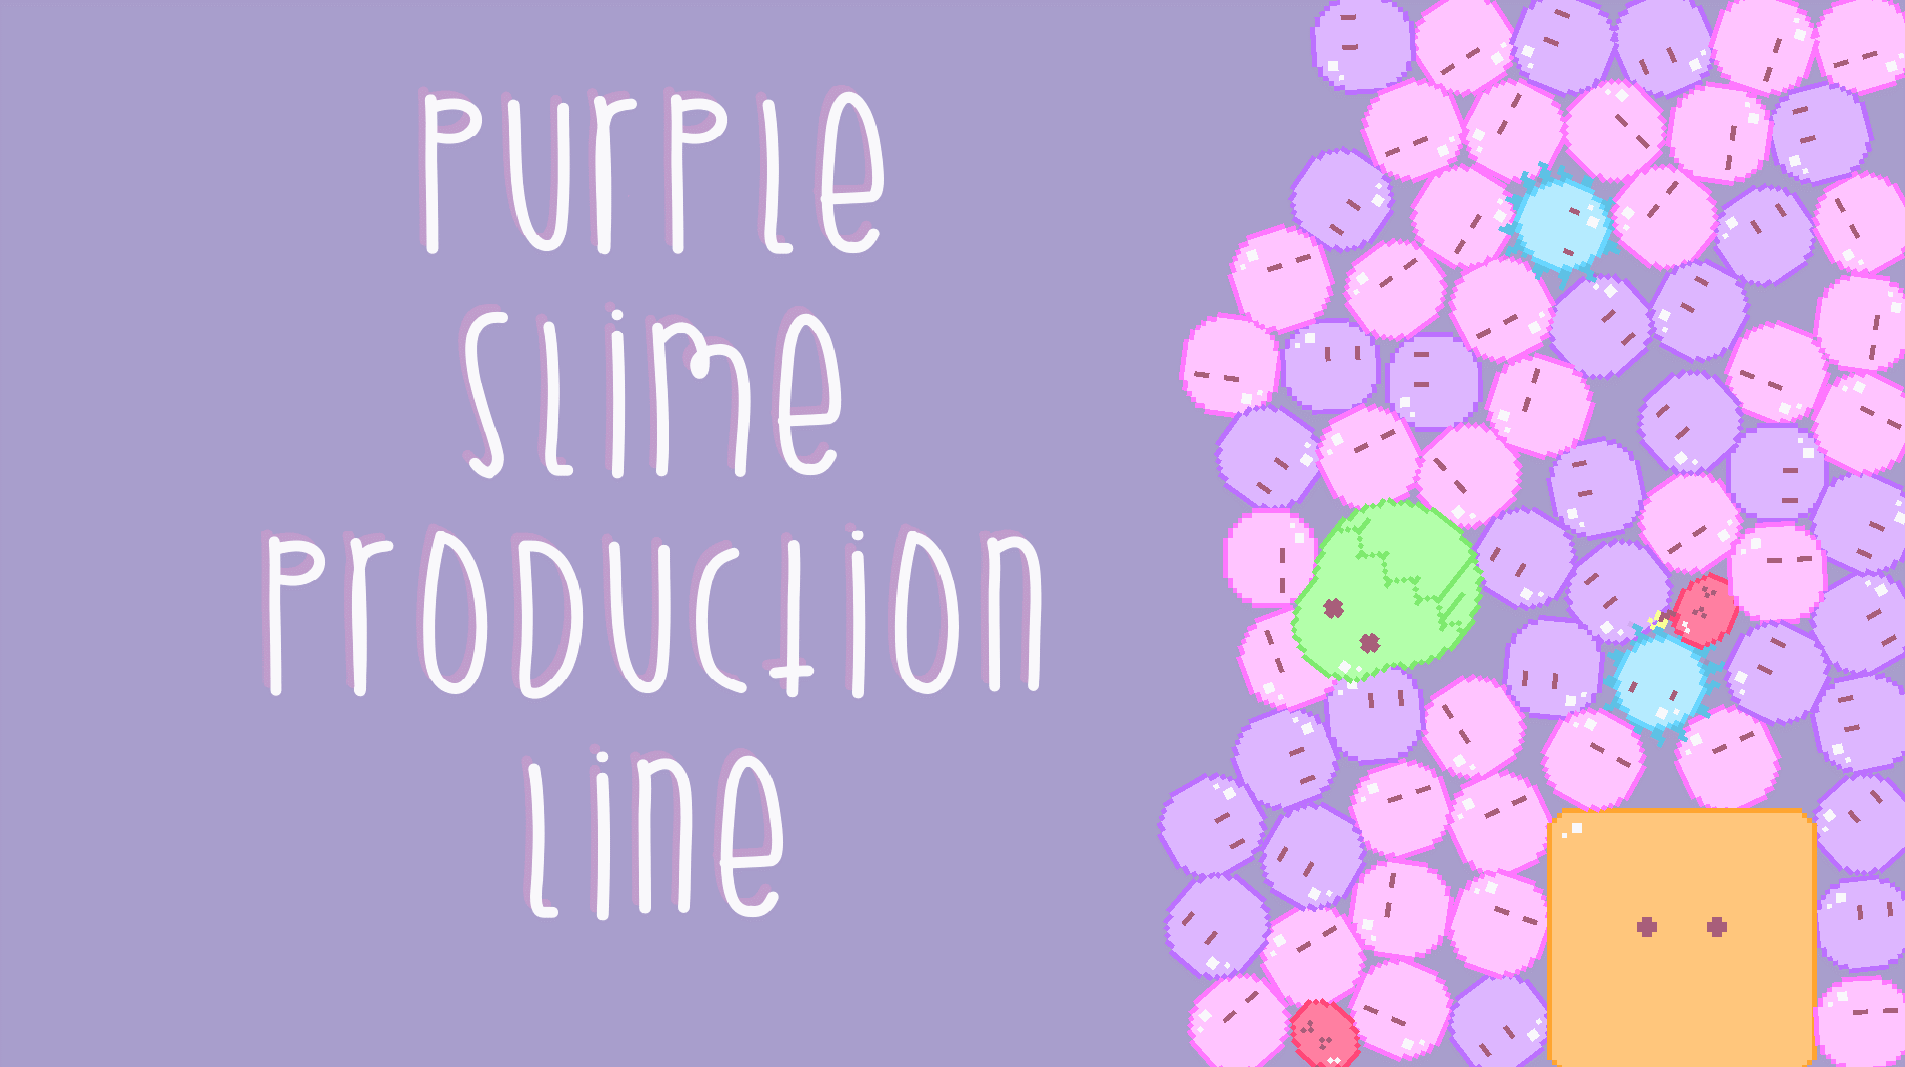 Purple Slime Production Line by Steve O'Gorman